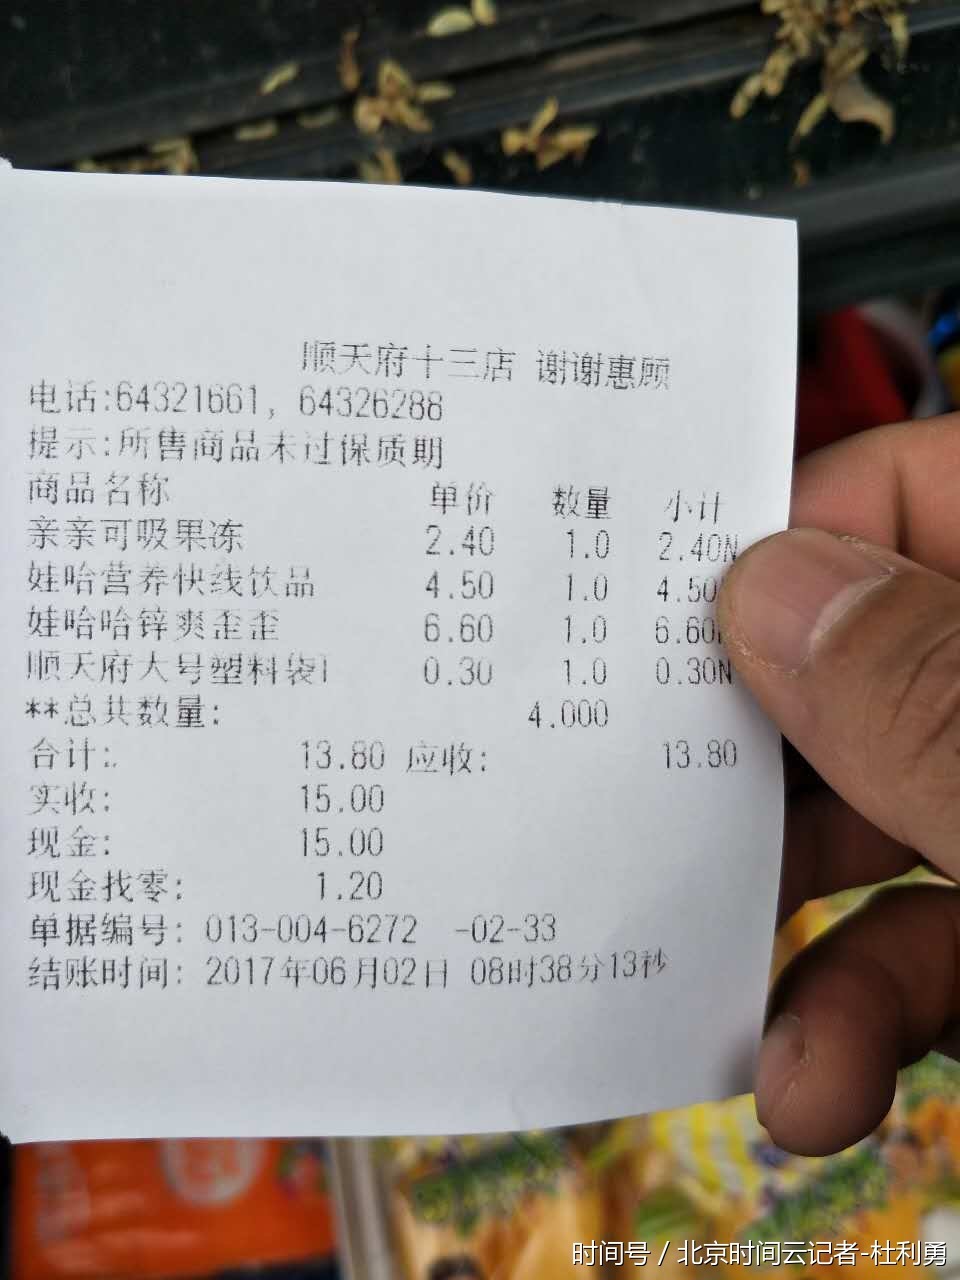 北京顺天府十三分店涉嫌销售过期食品